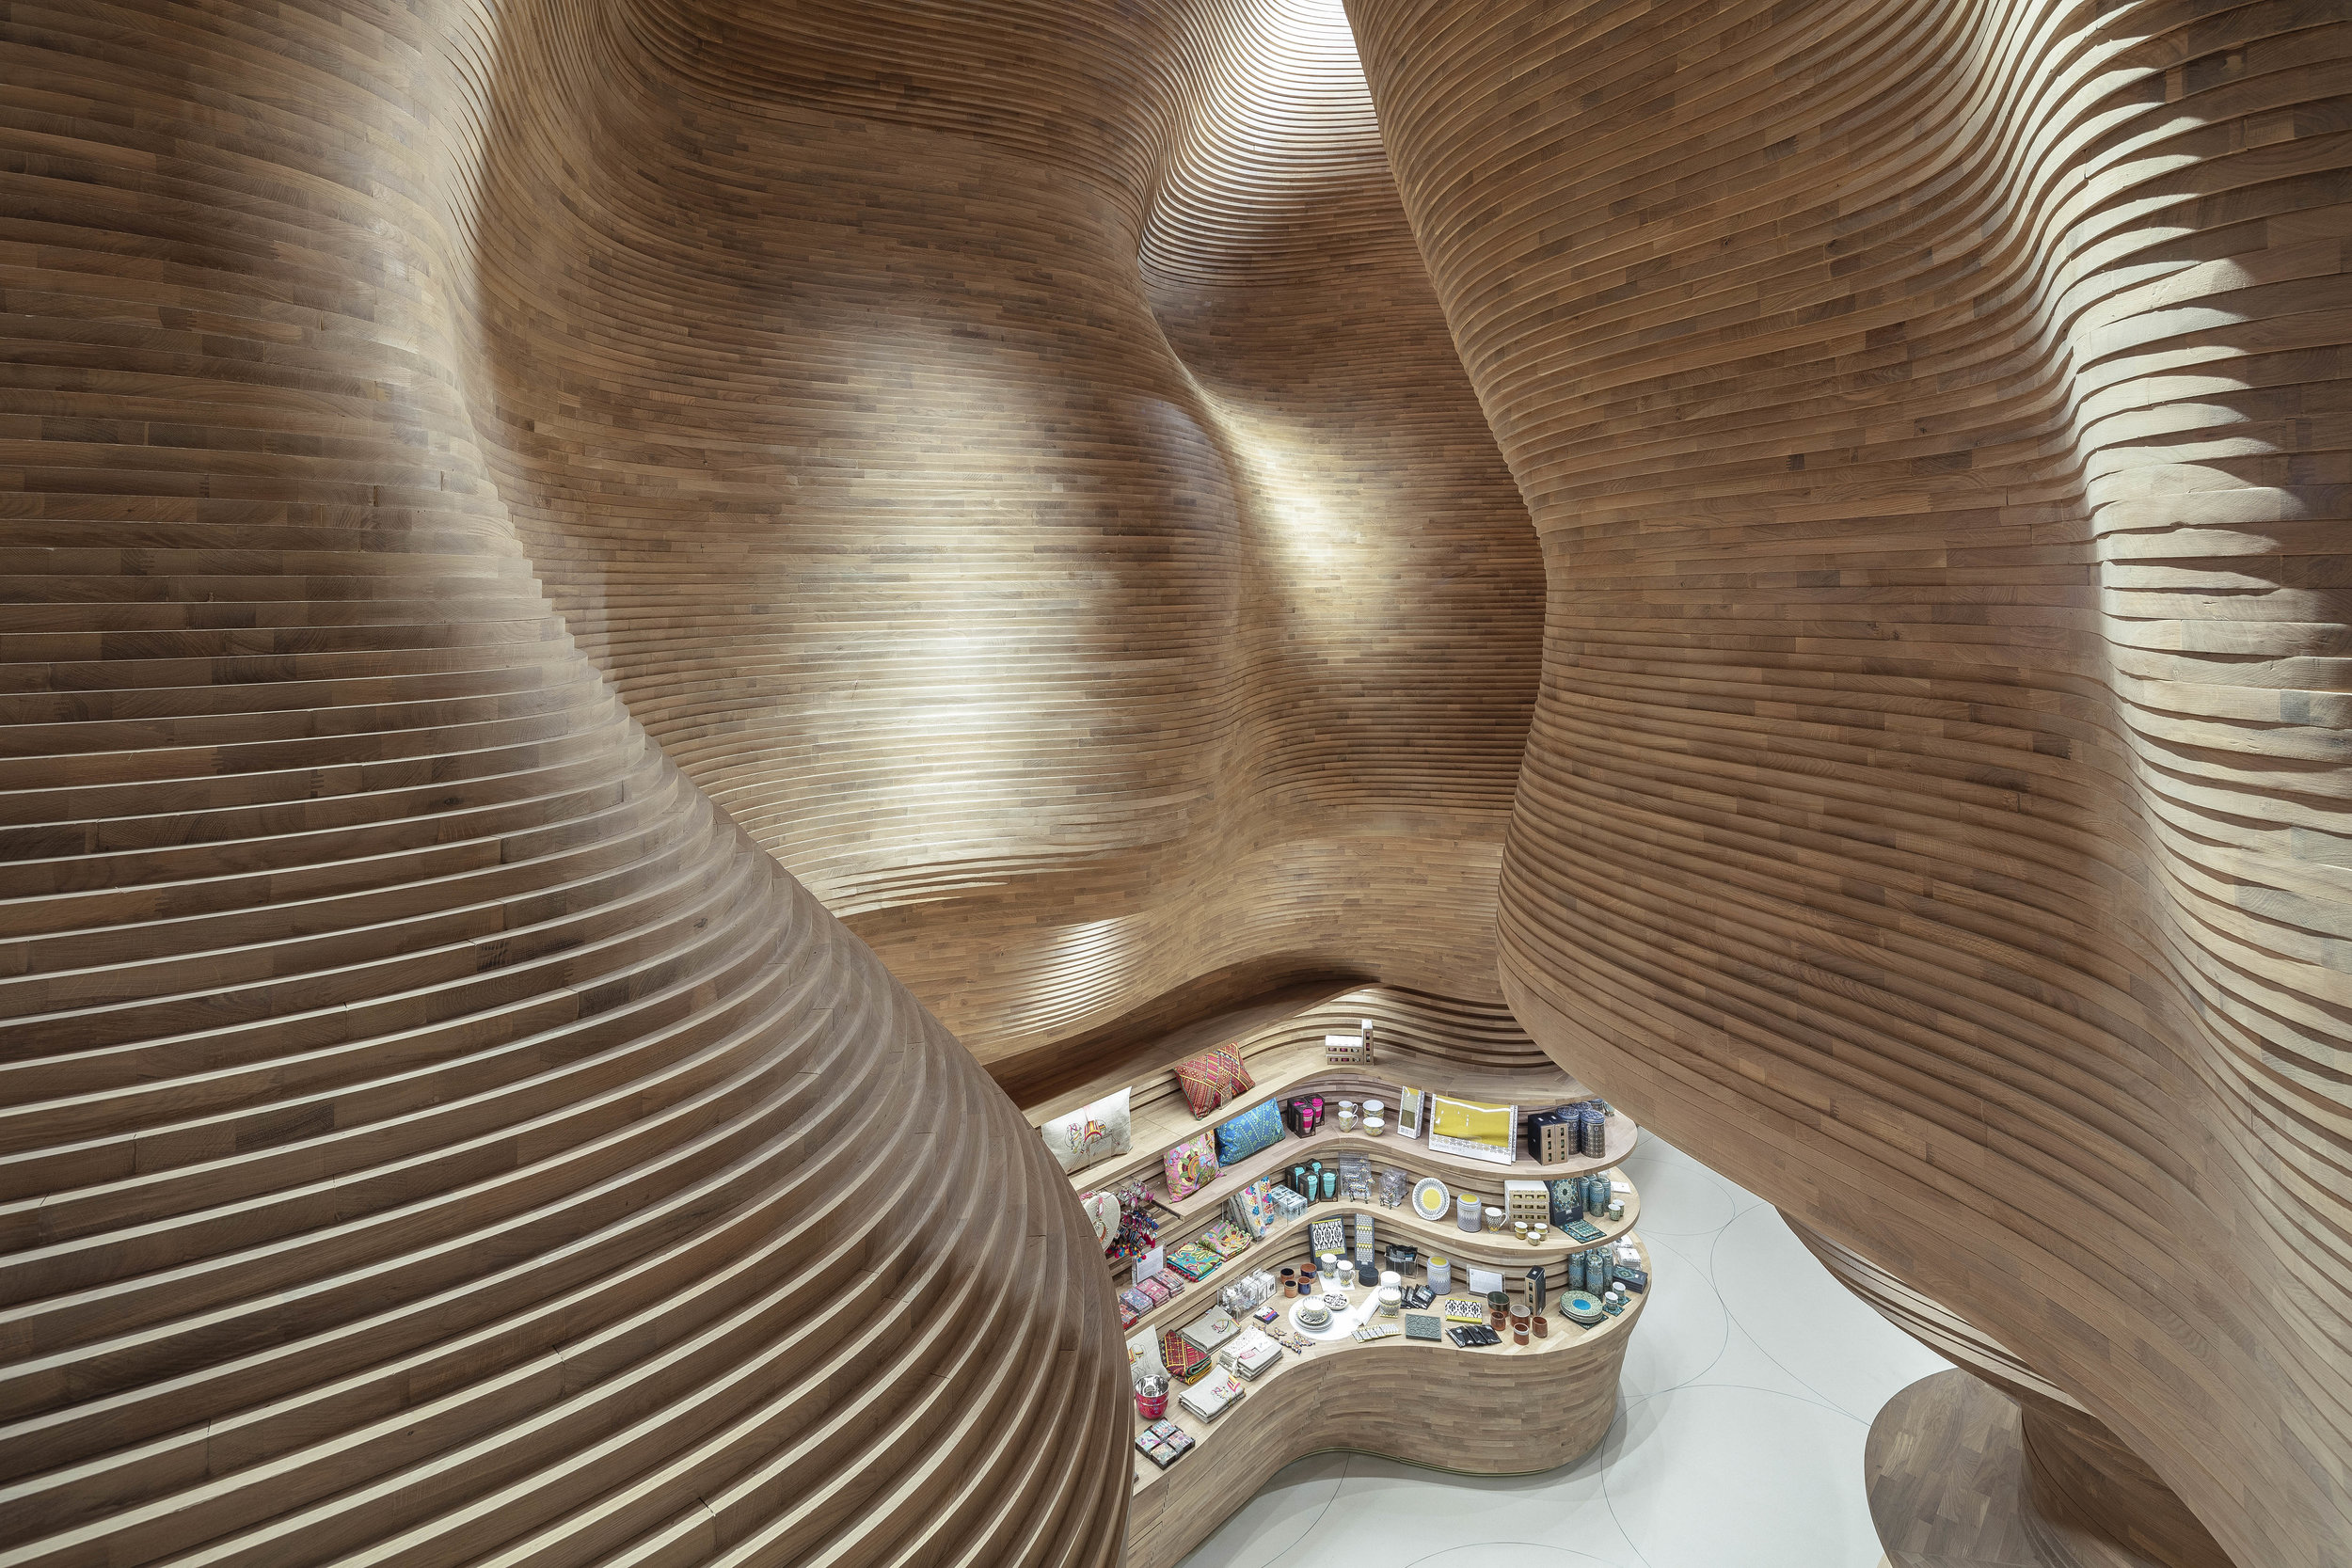 National Museum of Qatar Museum Store by Koichi Takada Architects